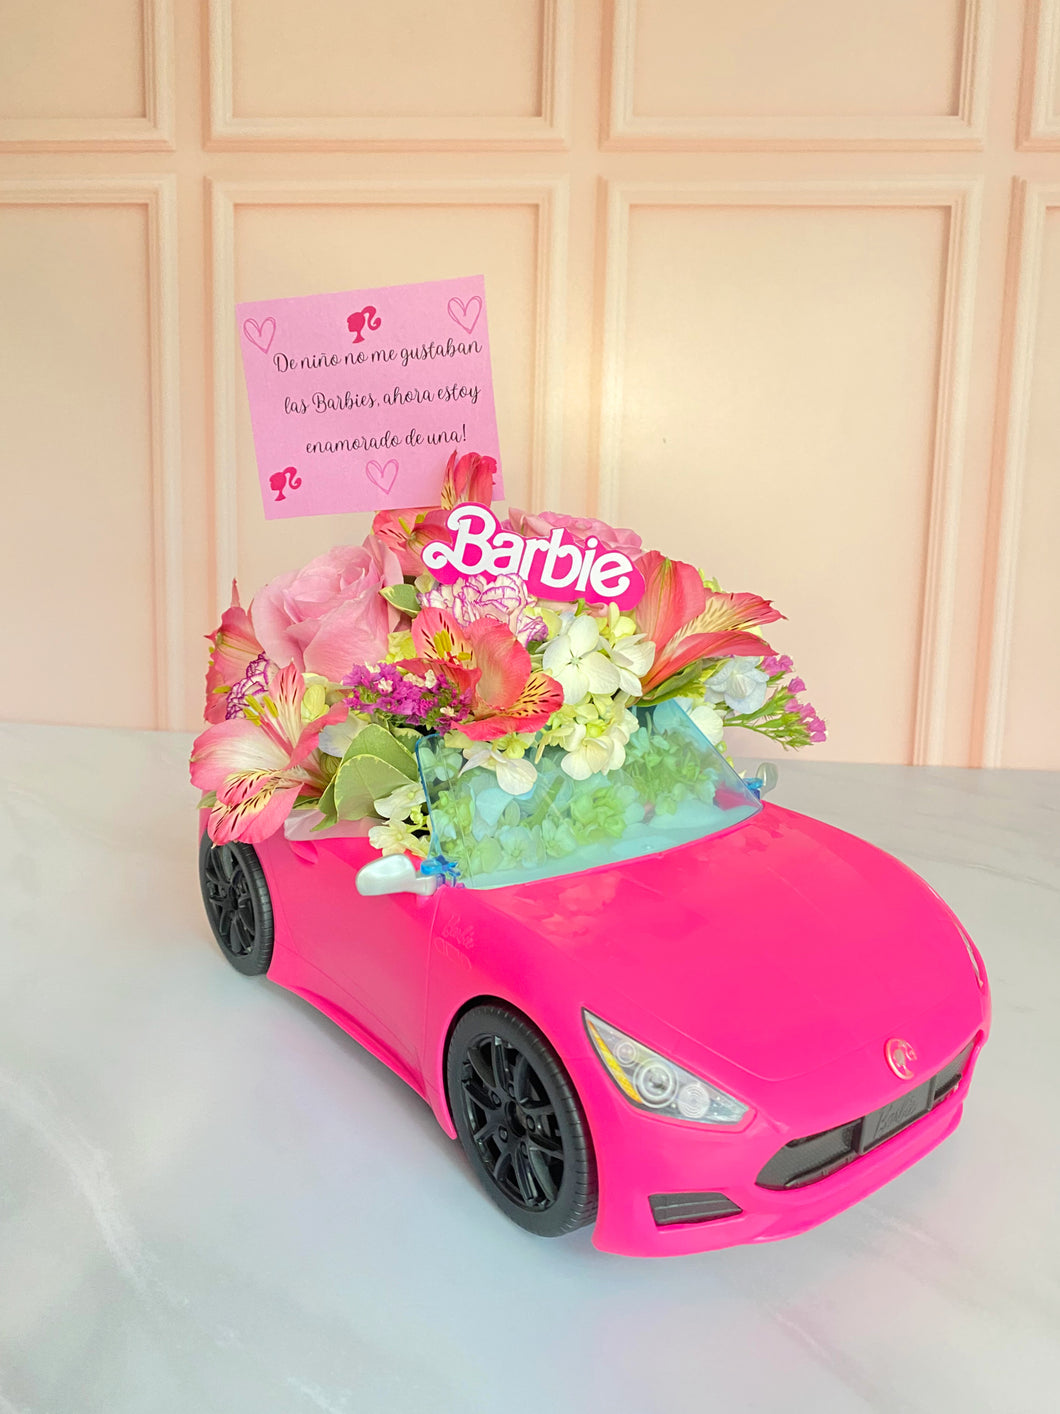 Carro de Barbie “Estoy enamorado de una!”